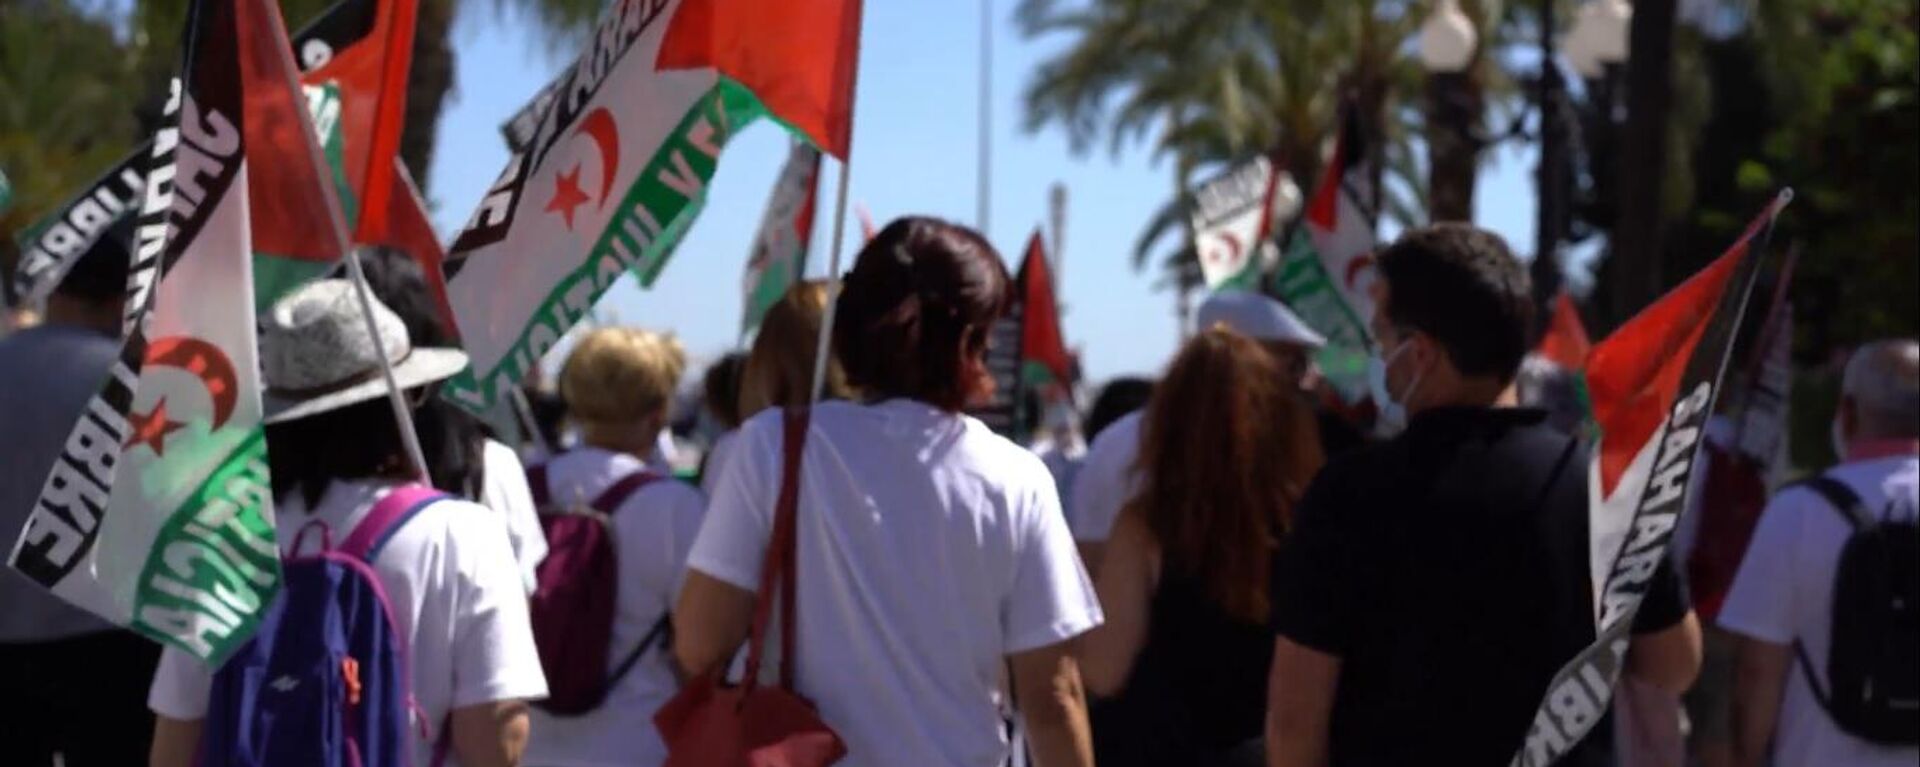 Marcha en Cádiz en solidaridad con el pueblo saharaui  - Sputnik Mundo, 1920, 21.05.2021